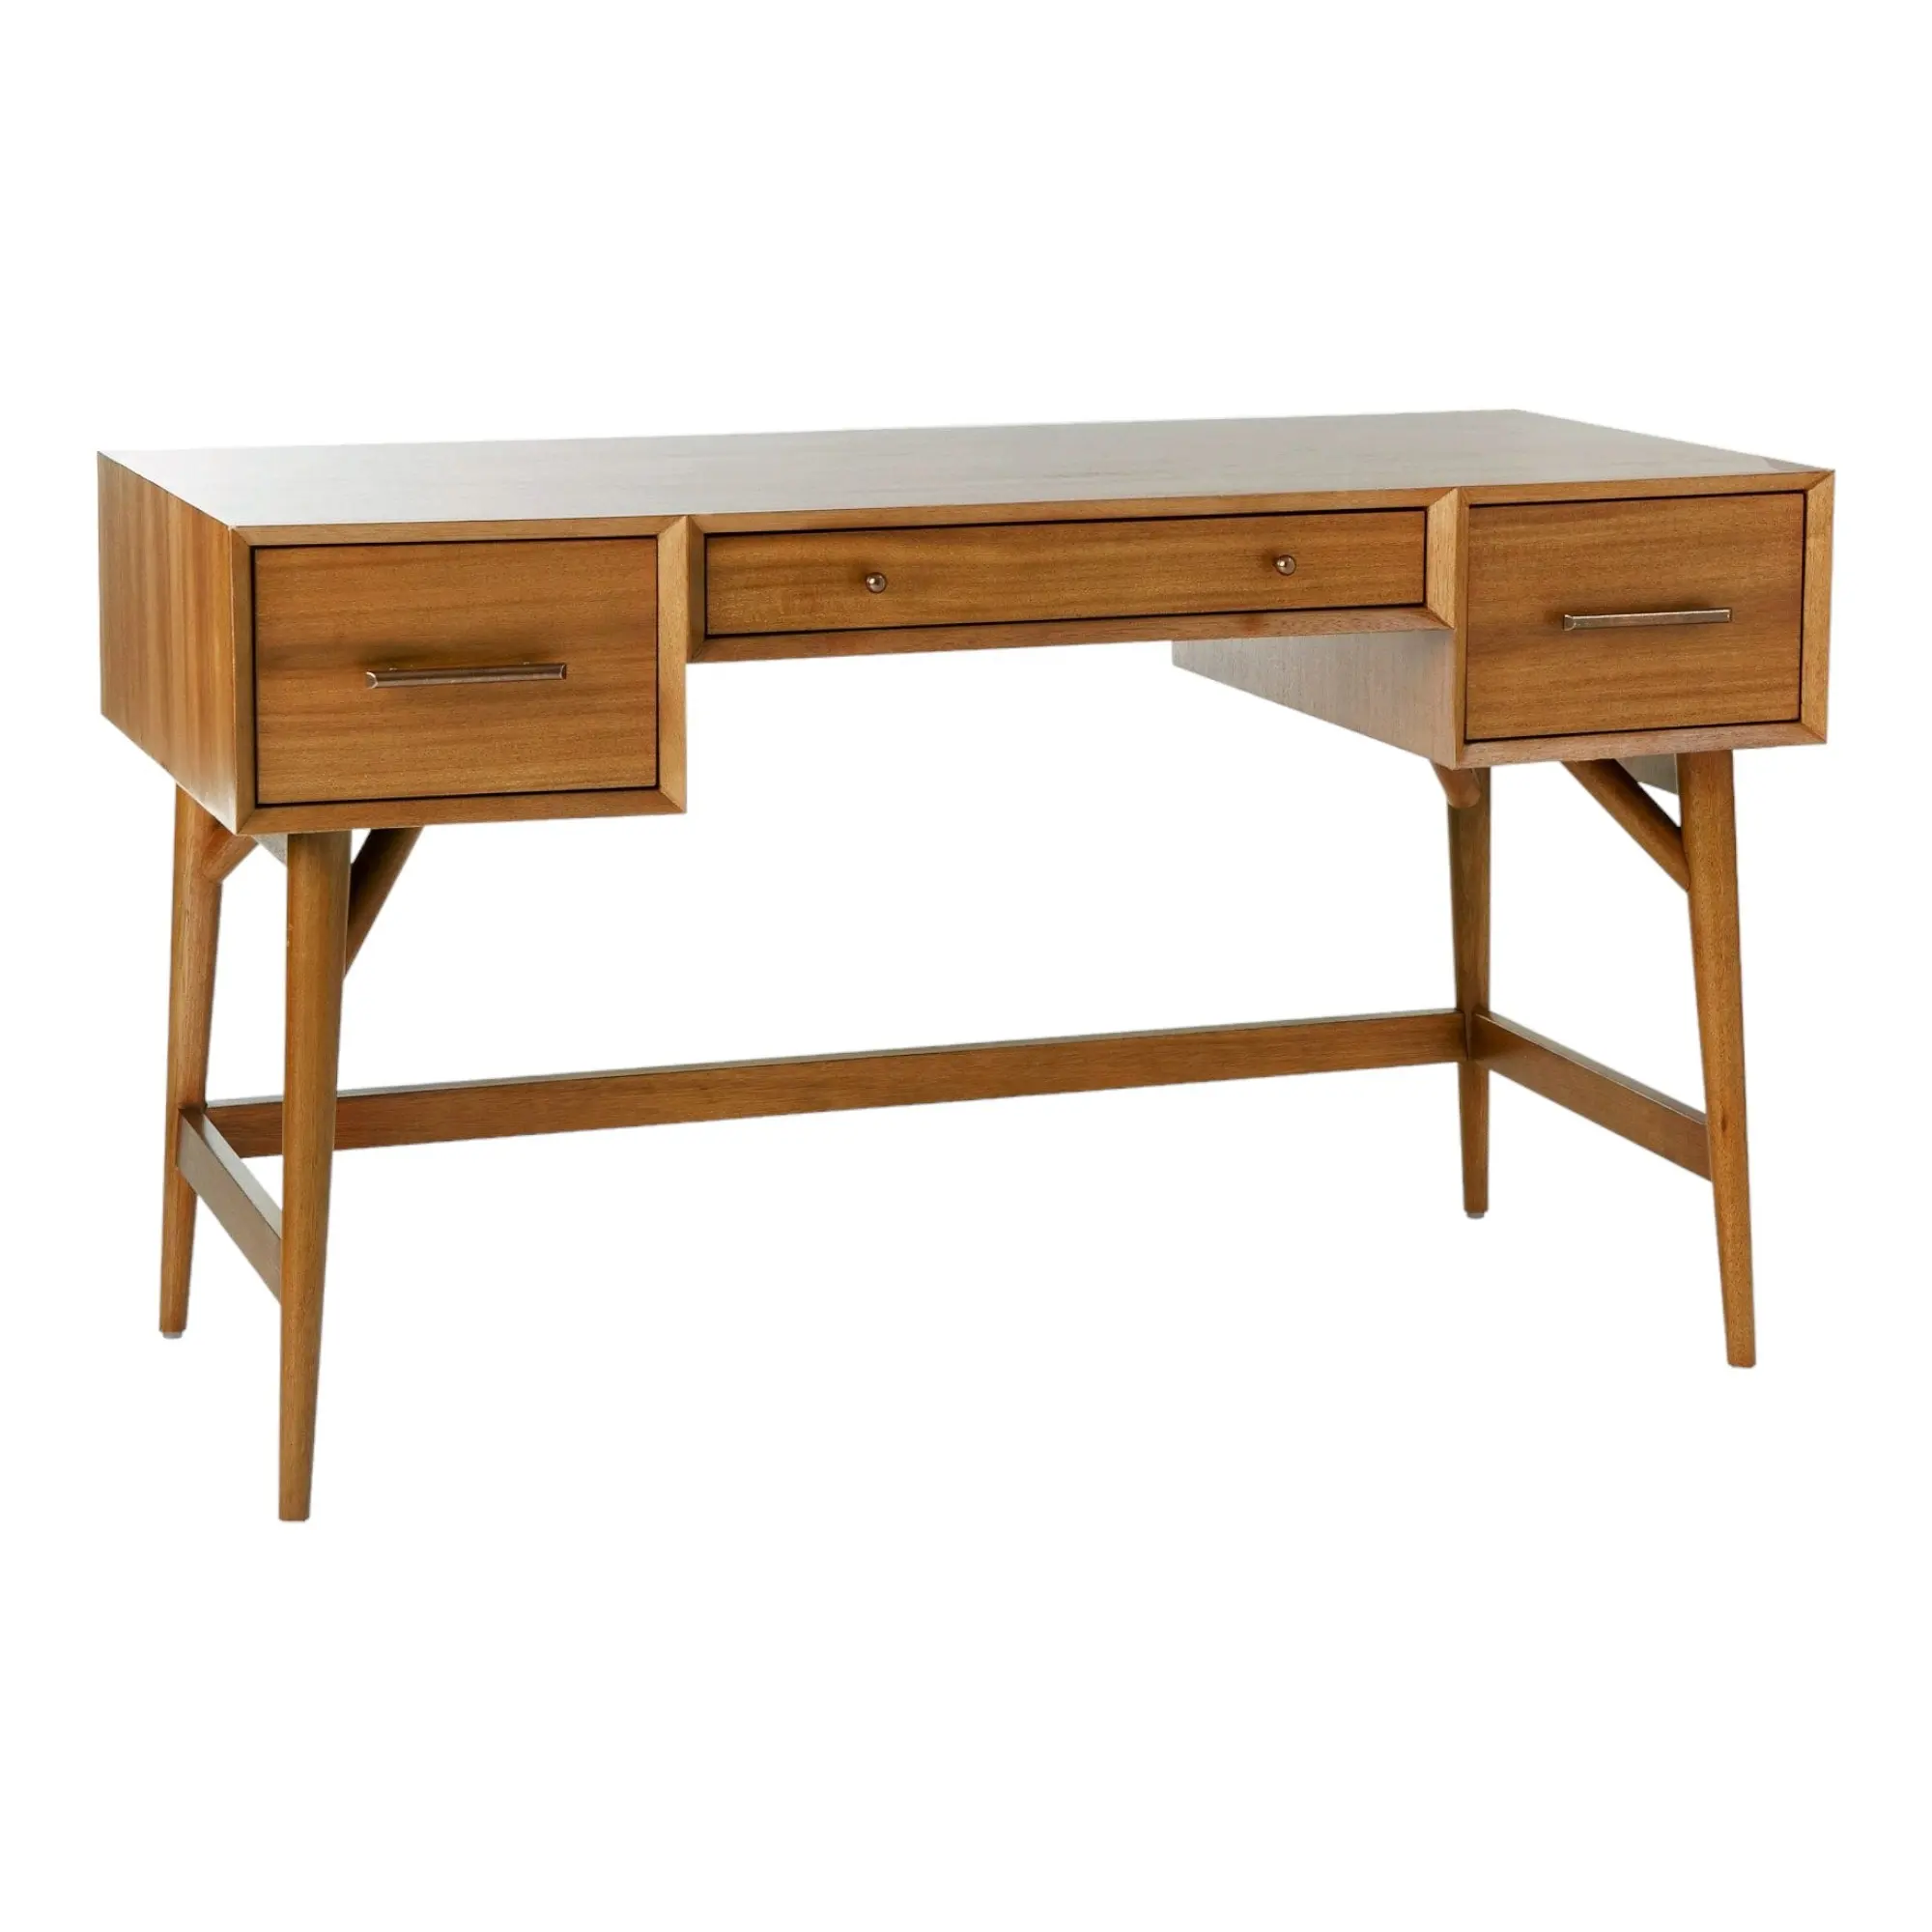 Meja kantor pertengahan abad sederhana kayu jati Solid finishing alami dengan tiga lemari